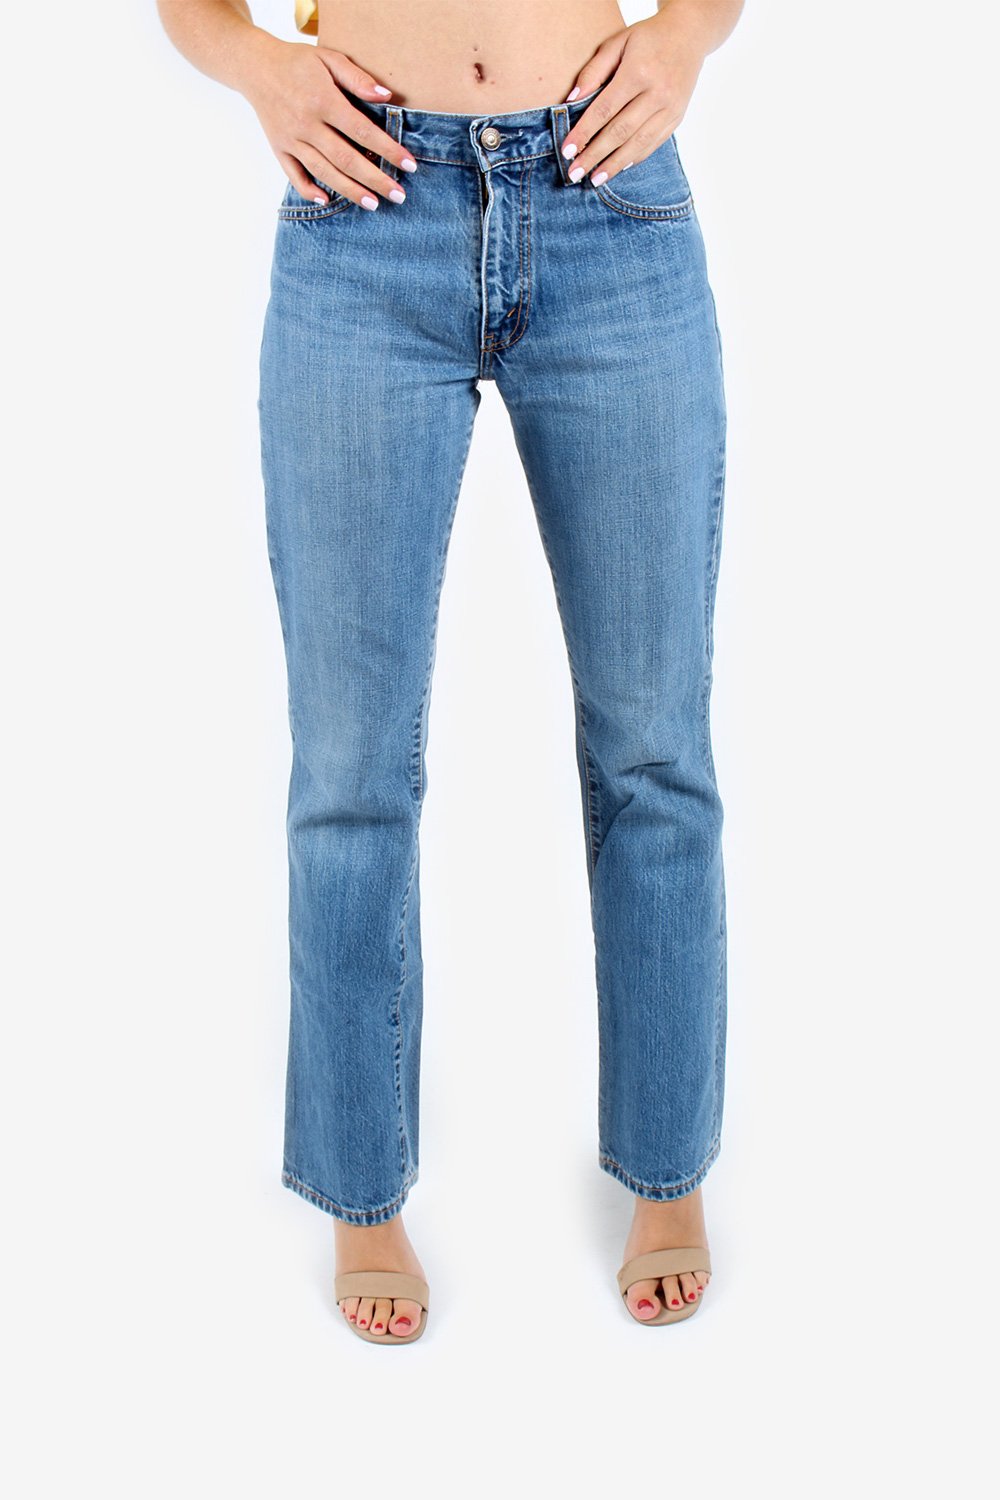 Levis 525 Bootcut Jeans Women Wash Zip Fly Flare – Pepper Tree London